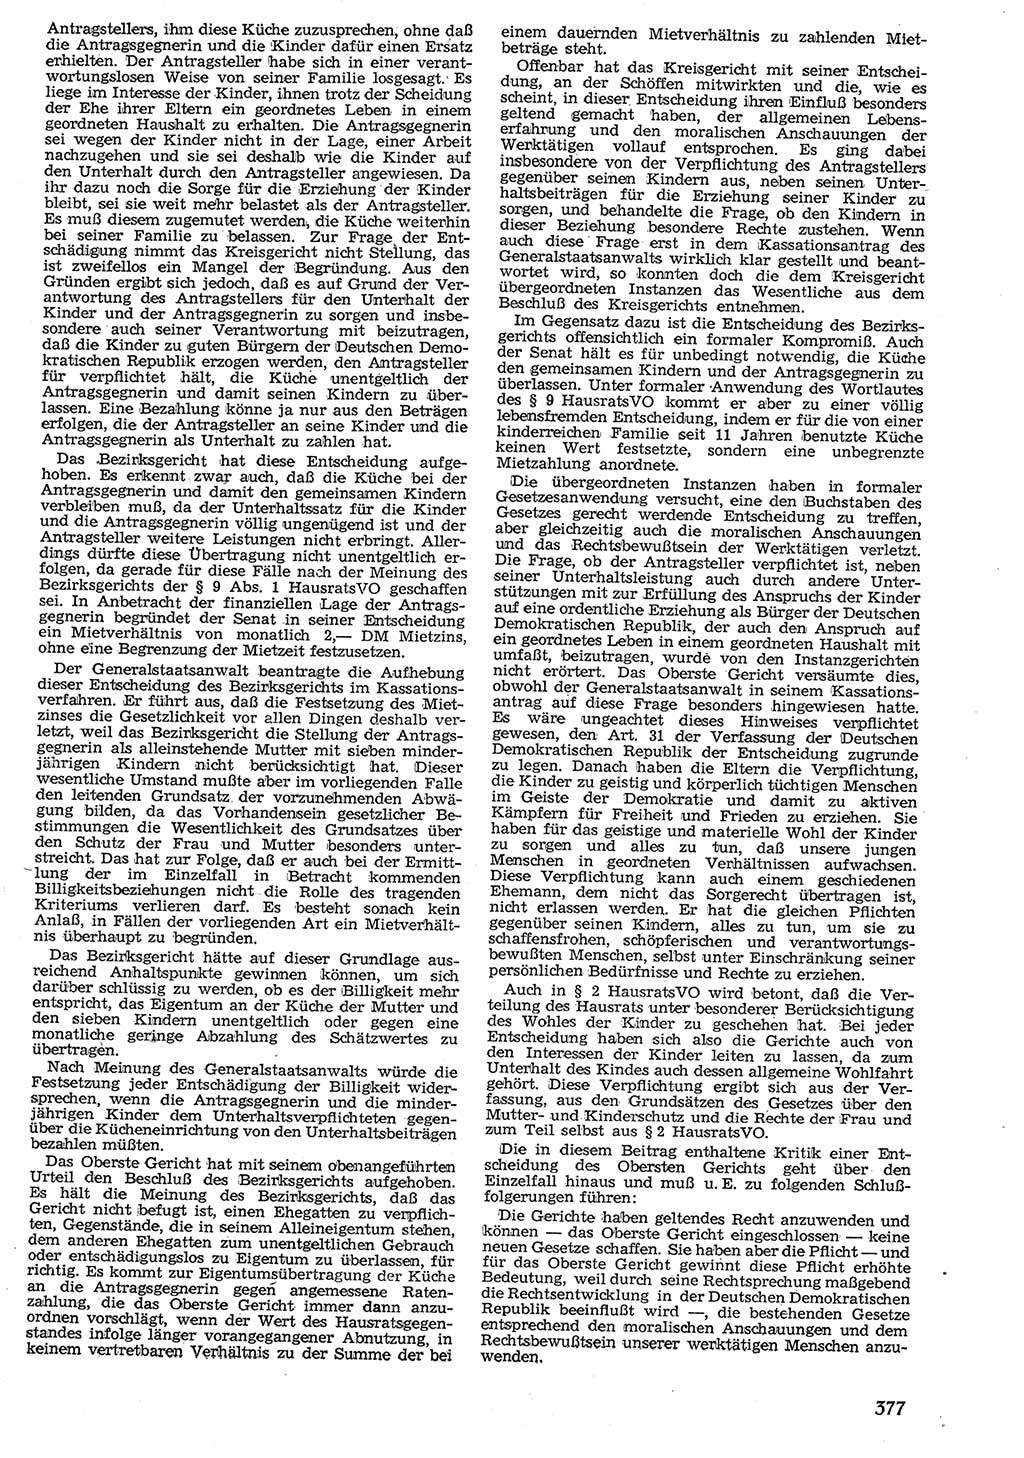 Neue Justiz (NJ), Zeitschrift für Recht und Rechtswissenschaft [Deutsche Demokratische Republik (DDR)], 10. Jahrgang 1956, Seite 377 (NJ DDR 1956, S. 377)